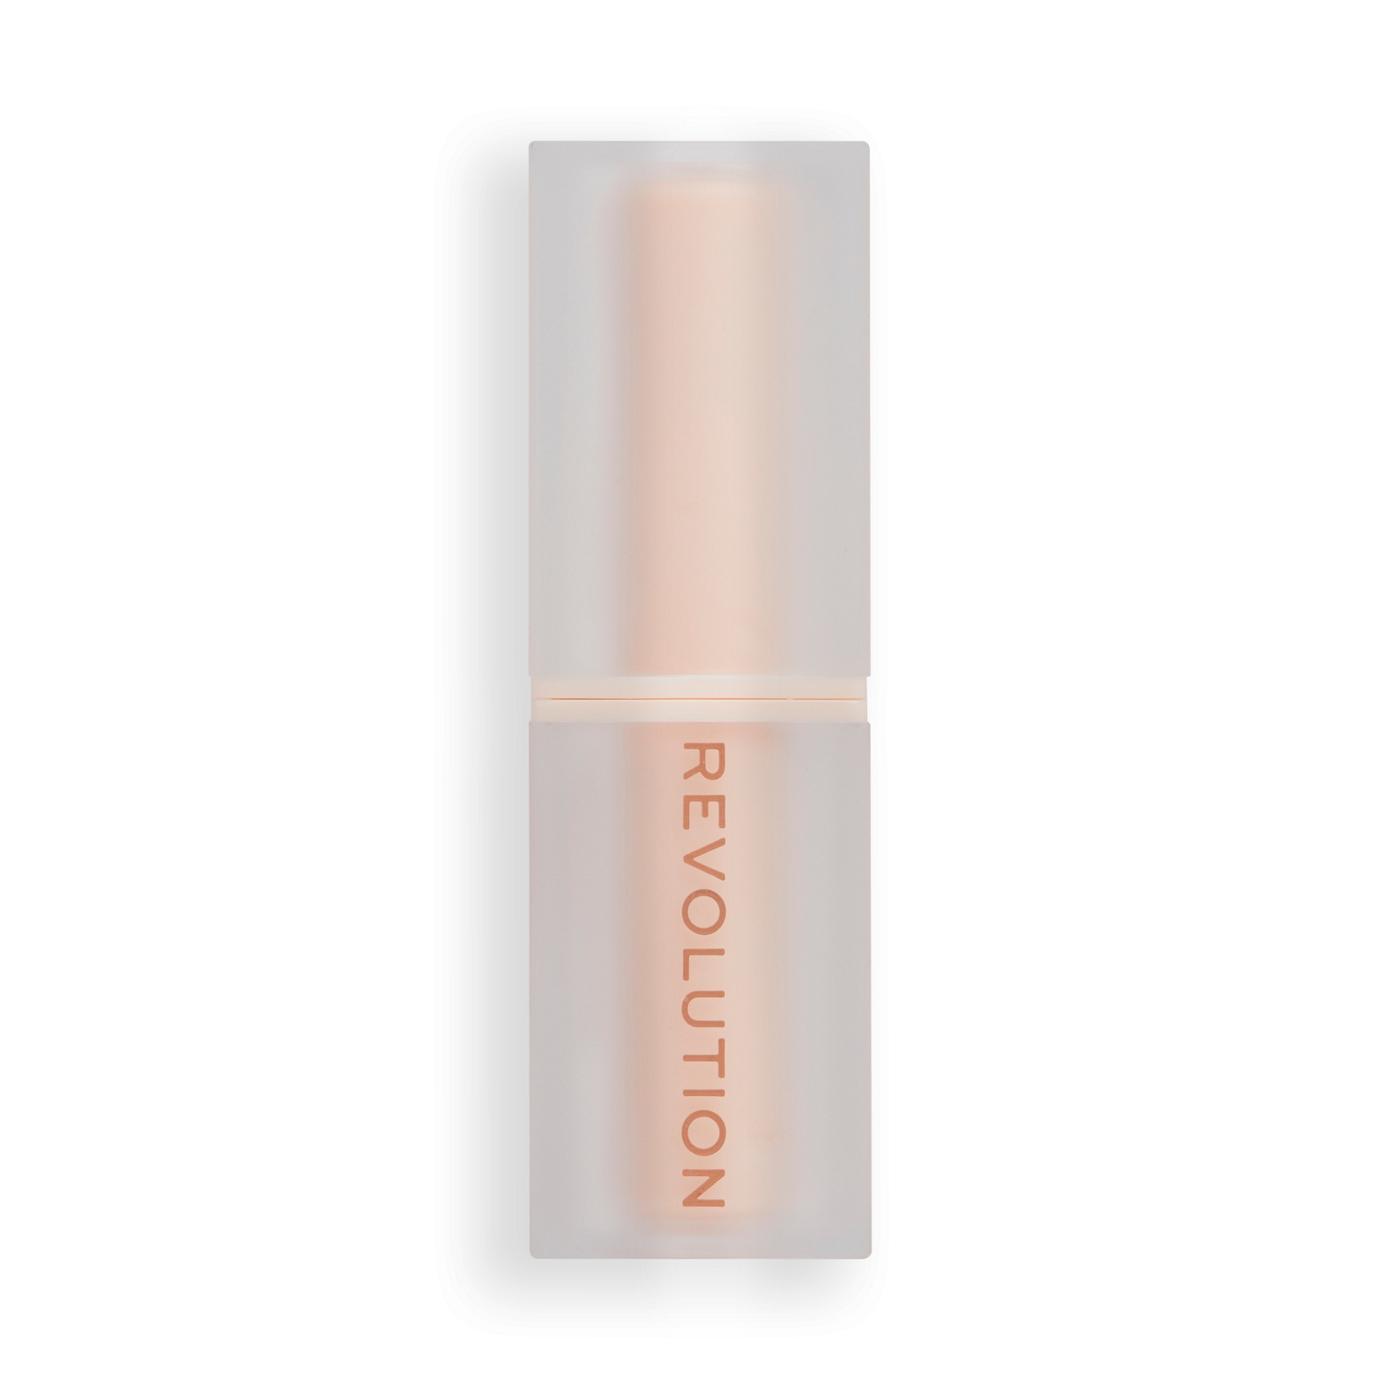 Makeup Revolution Lip Allure Soft Satin Lipstick - Brunch Pink Nude; image 1 of 3